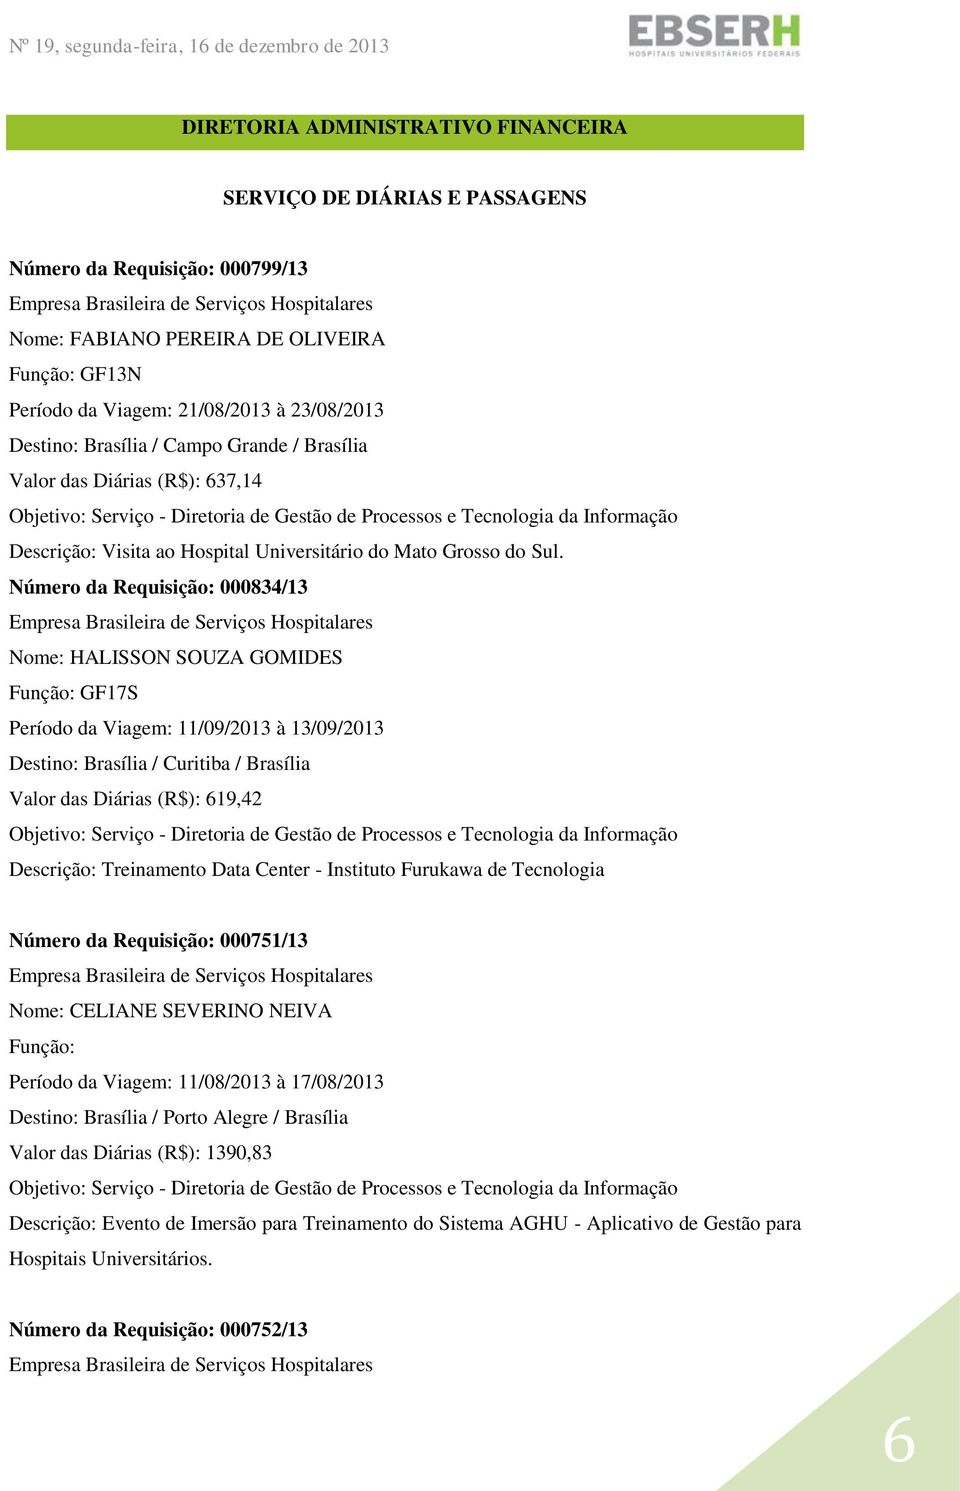 Número da Requisição: 000834/13 Nome: HALISSON SOUZA GOMIDES GF17S Período da Viagem: 11/09/2013 à 13/09/2013 Destino: Brasília / Curitiba / Brasília Valor das Diárias (R$): 619,42 Descrição: